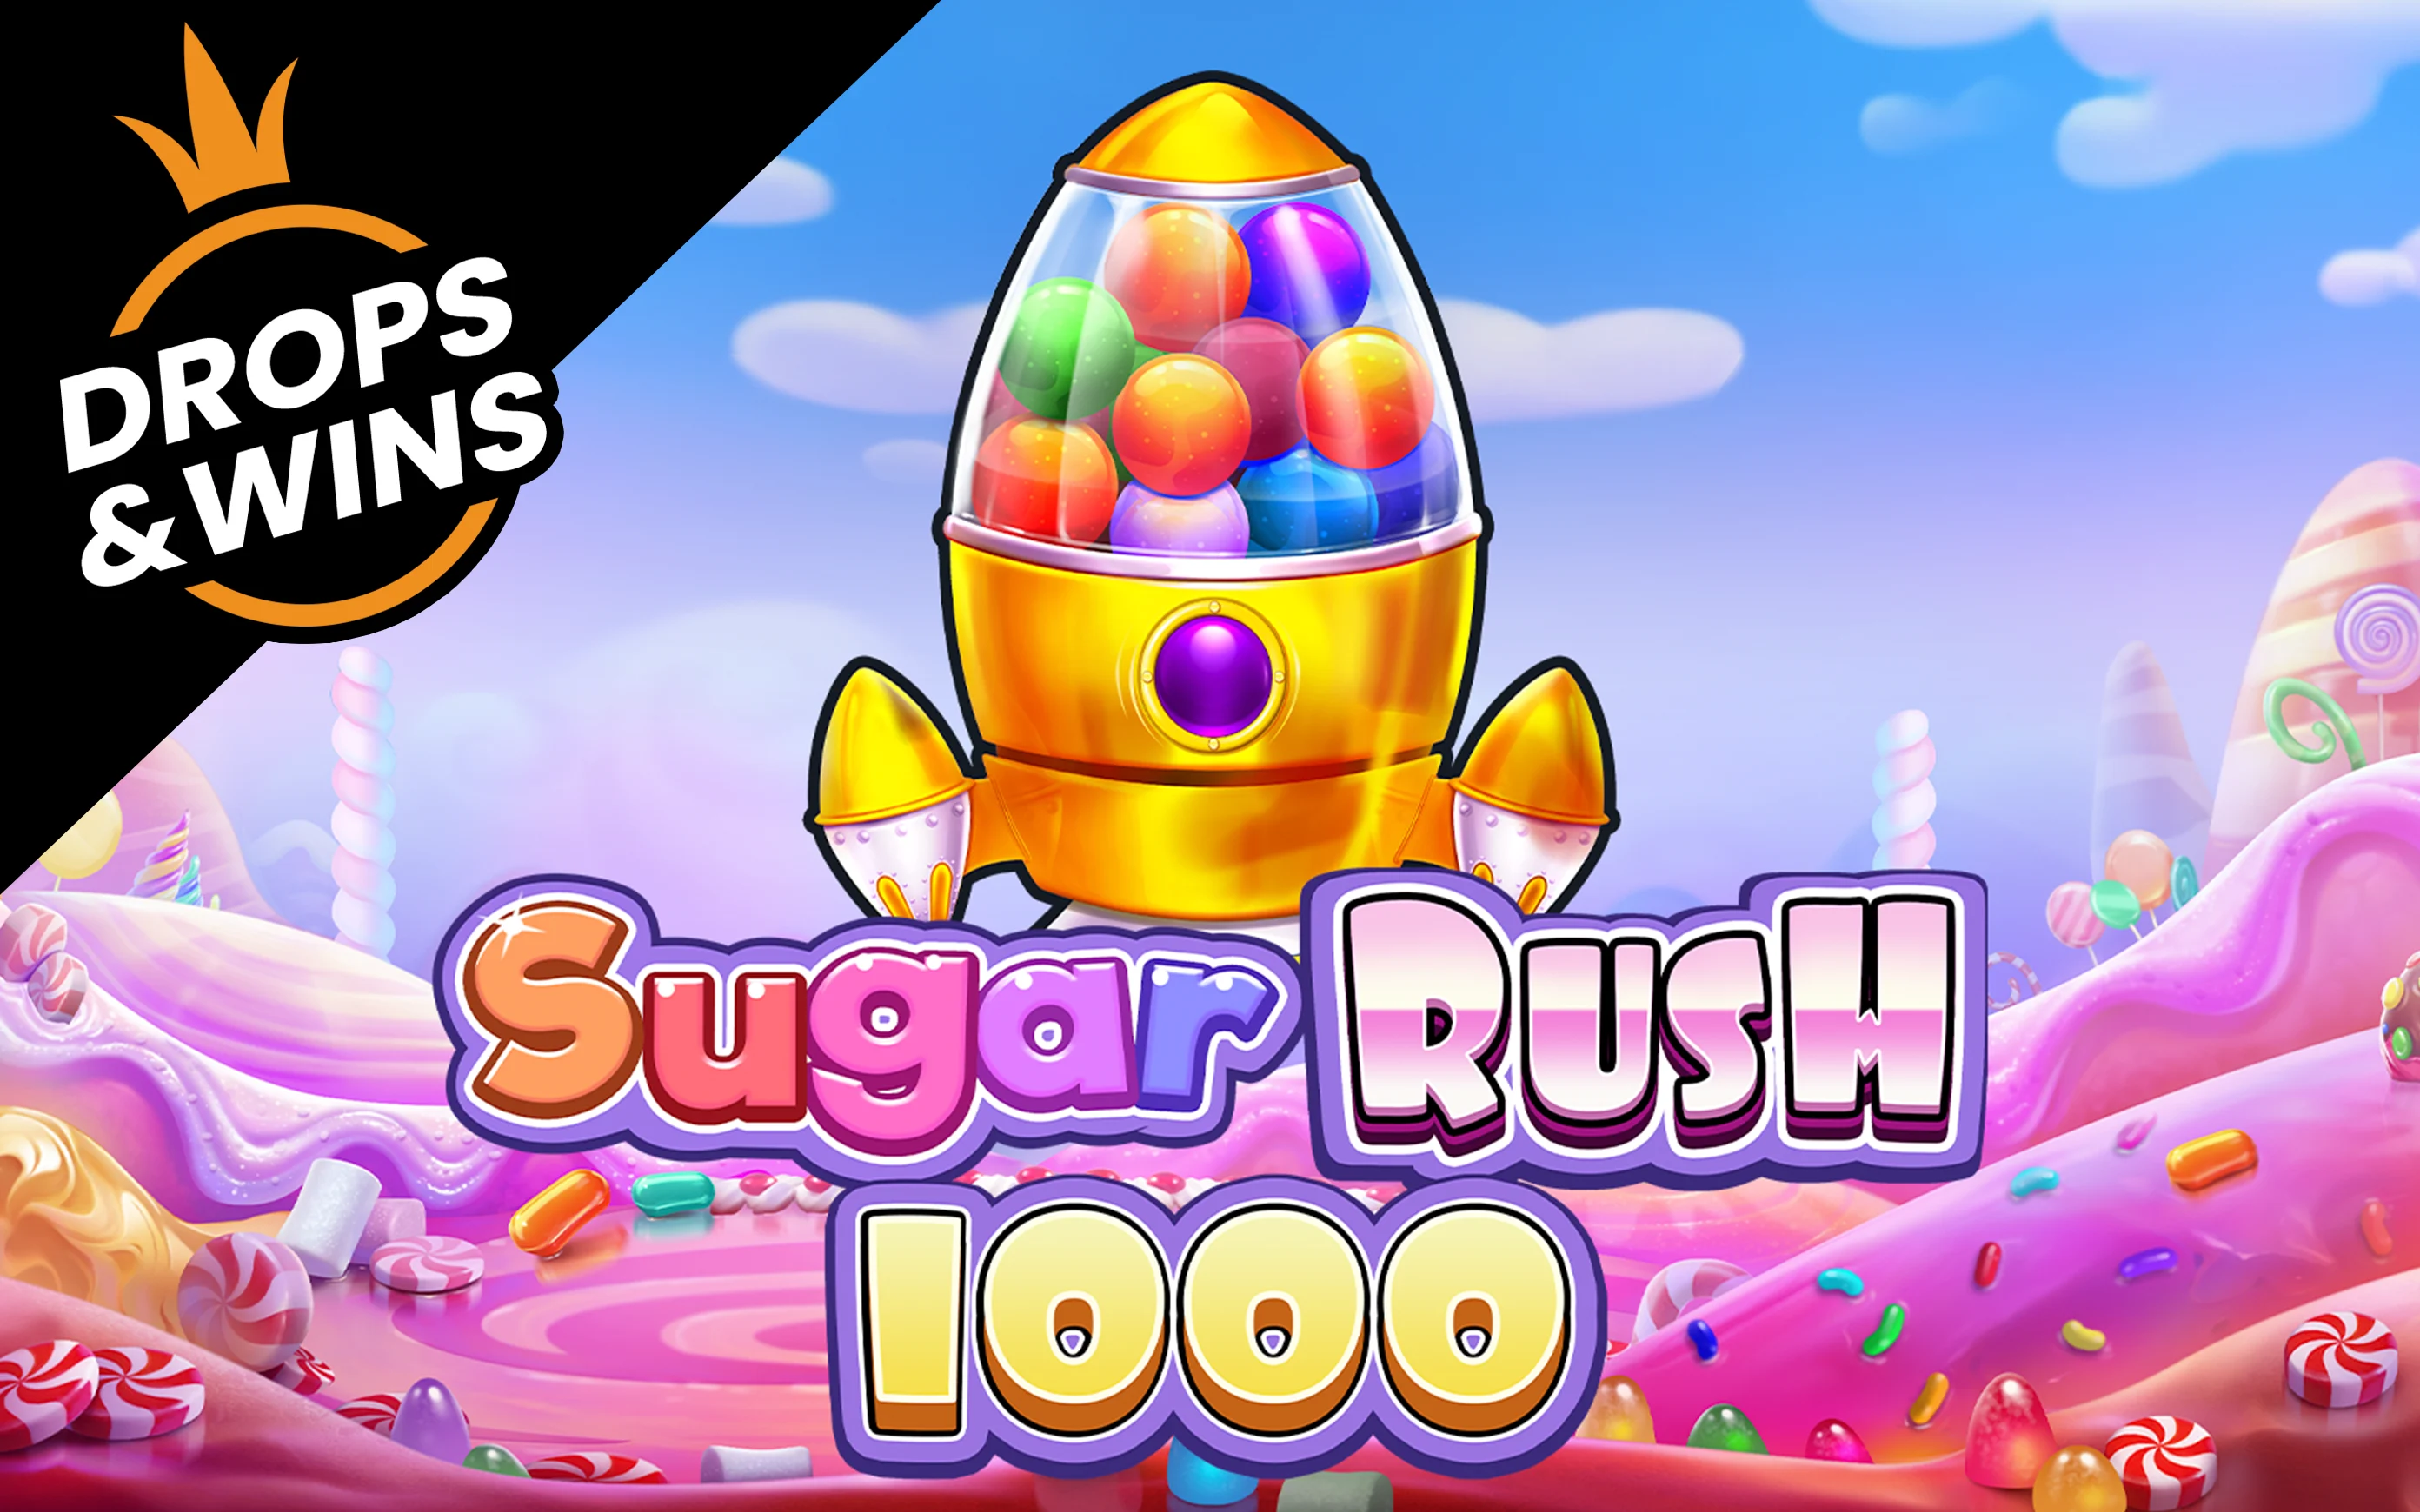 Zagraj w Sugar Rush 1000 w kasynie online Starcasino.be